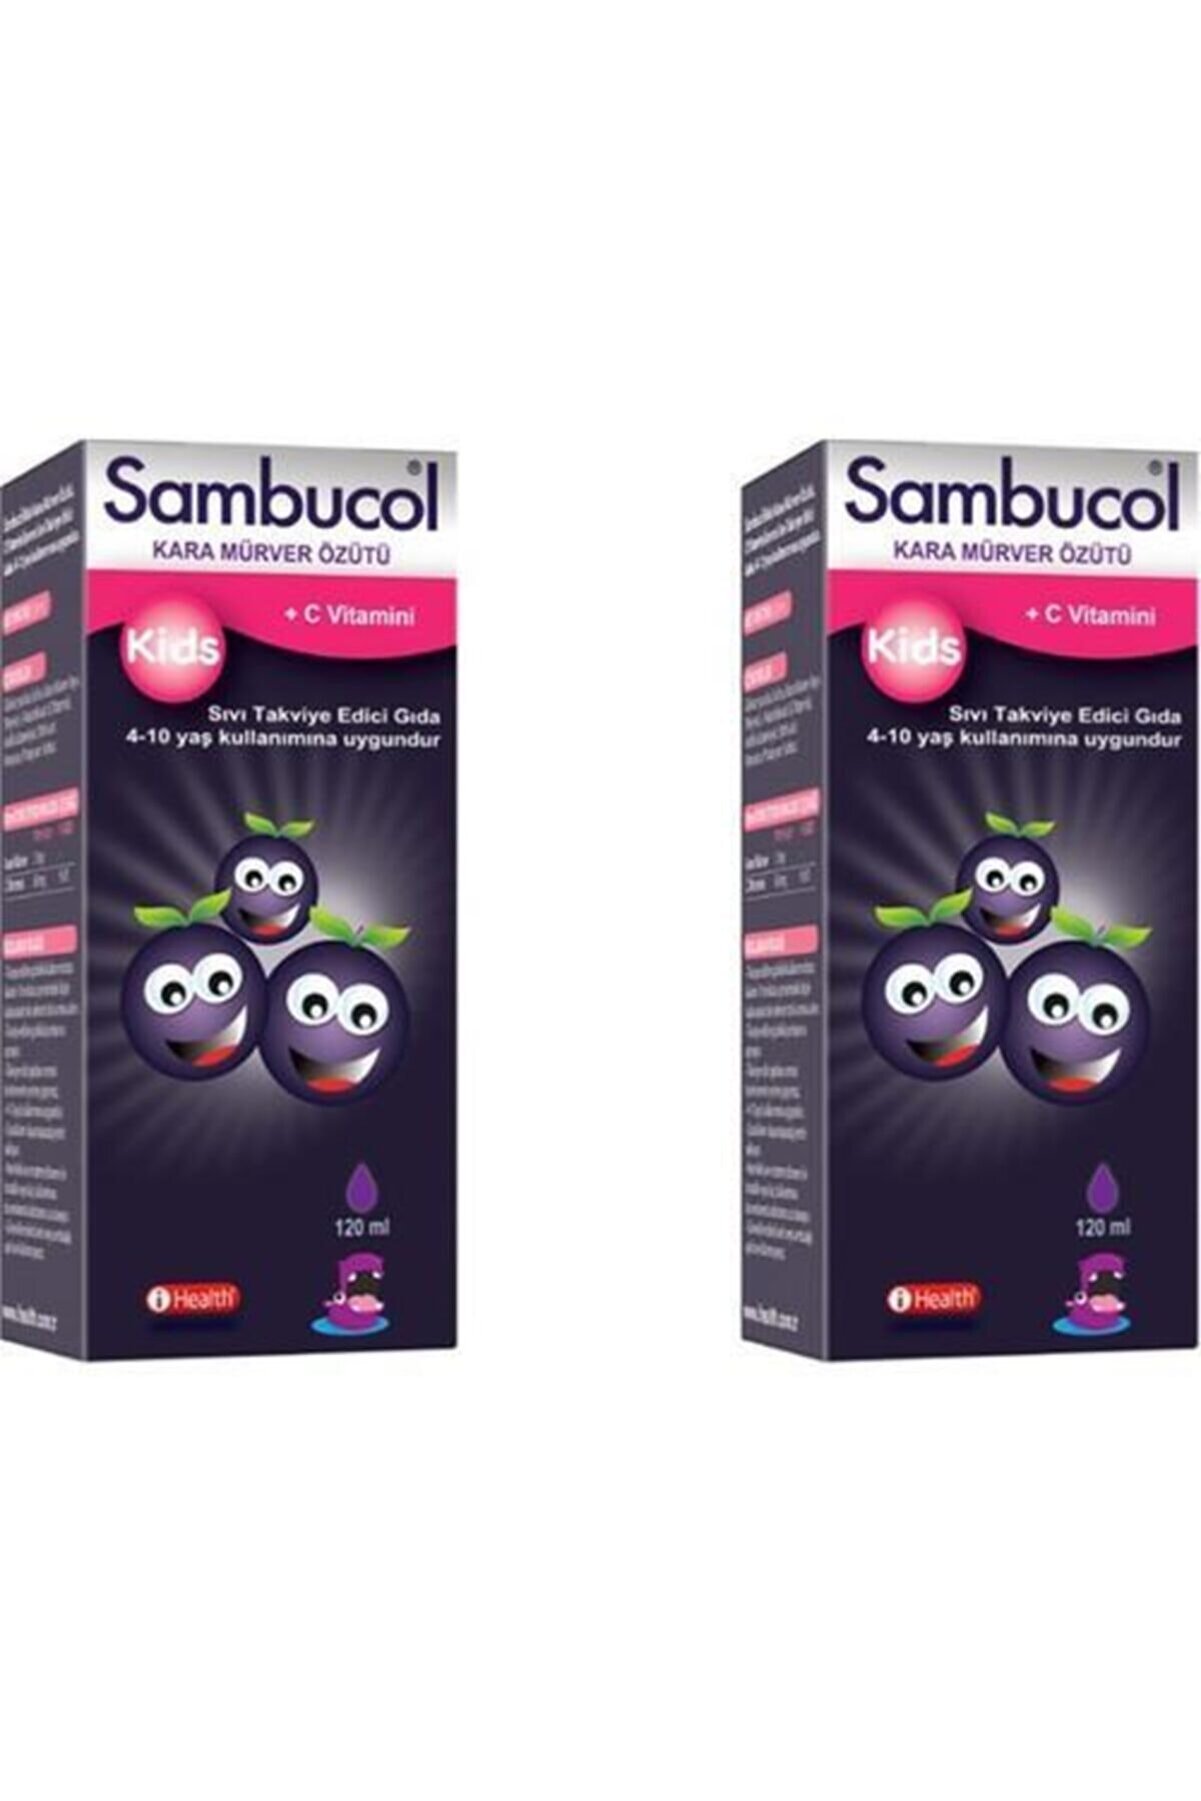 Sambucol Kids Likit 120 Ml 2 Adet